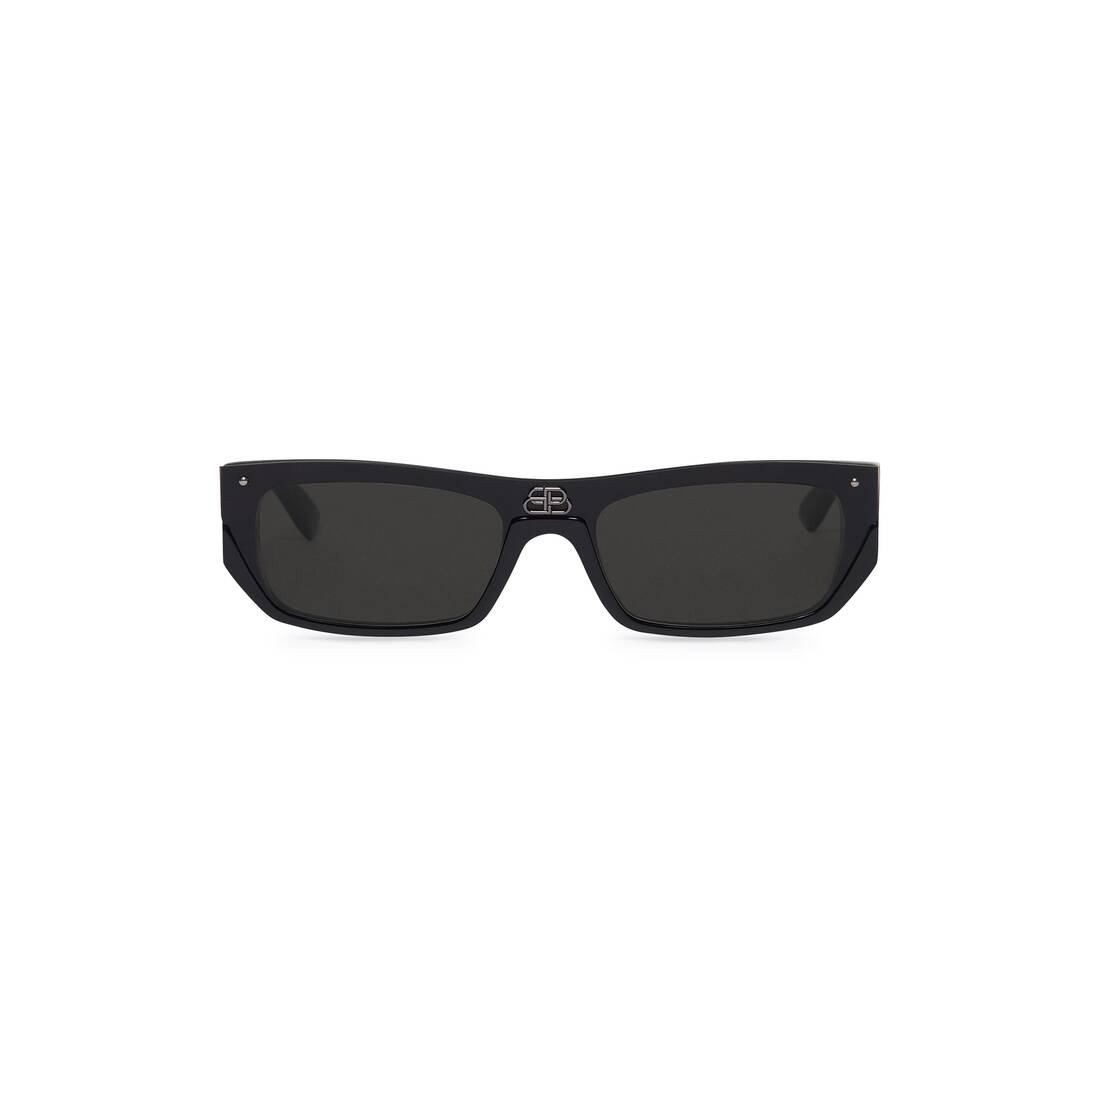 Shield Rectangle Sunglasses in Black